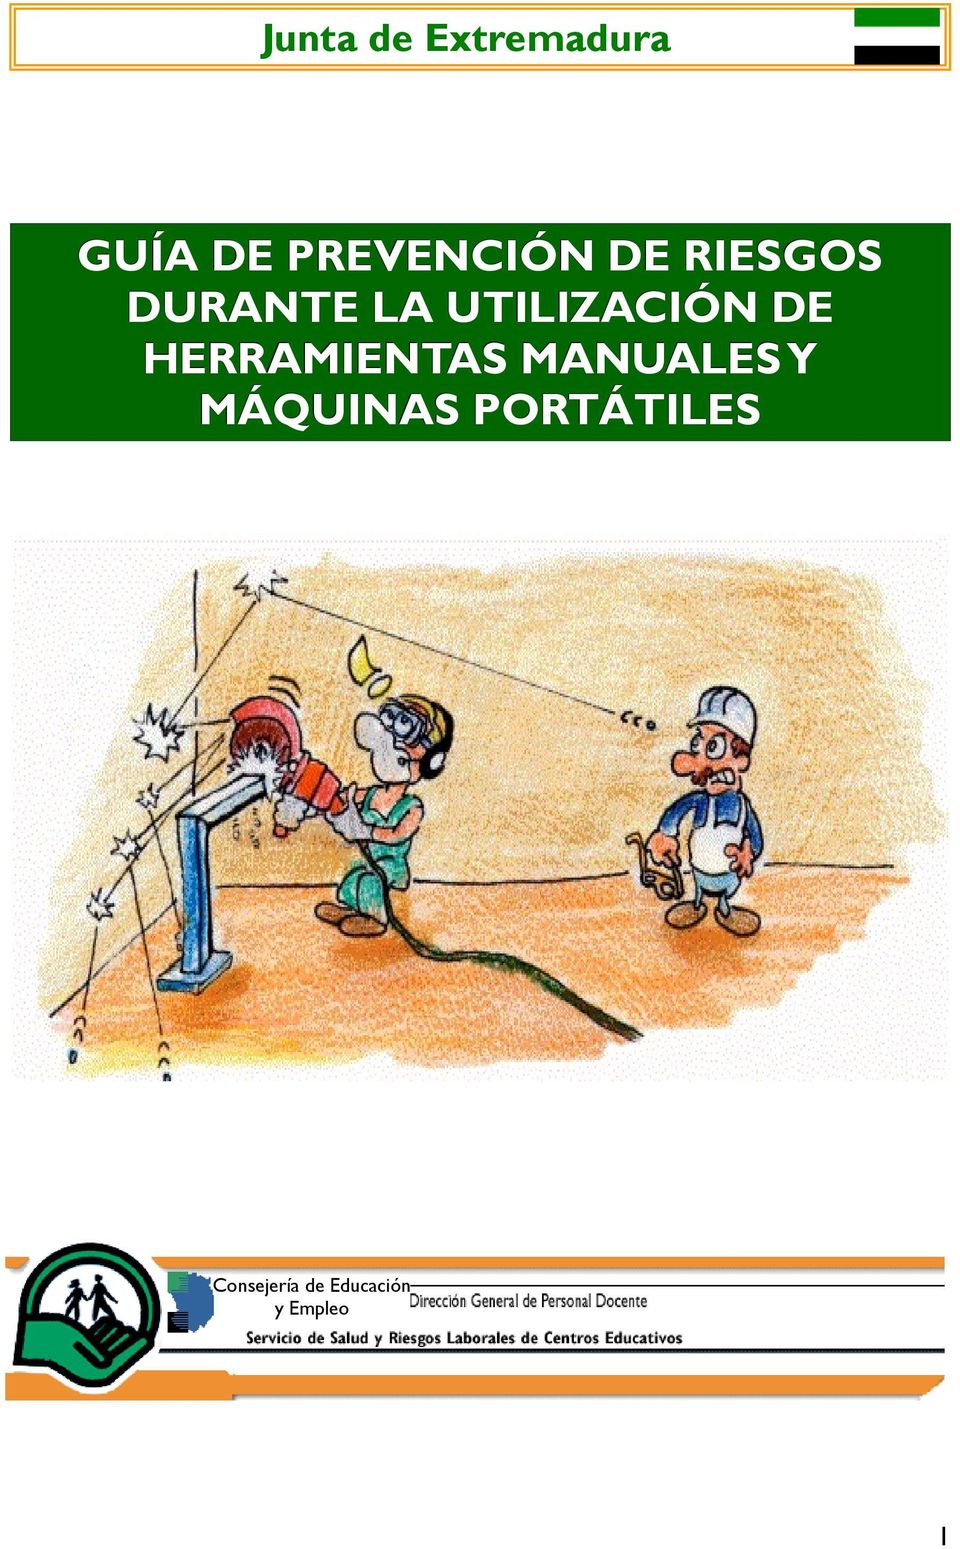 UTILIZACIÓN DE HERRAMIENTAS MANUALES Y